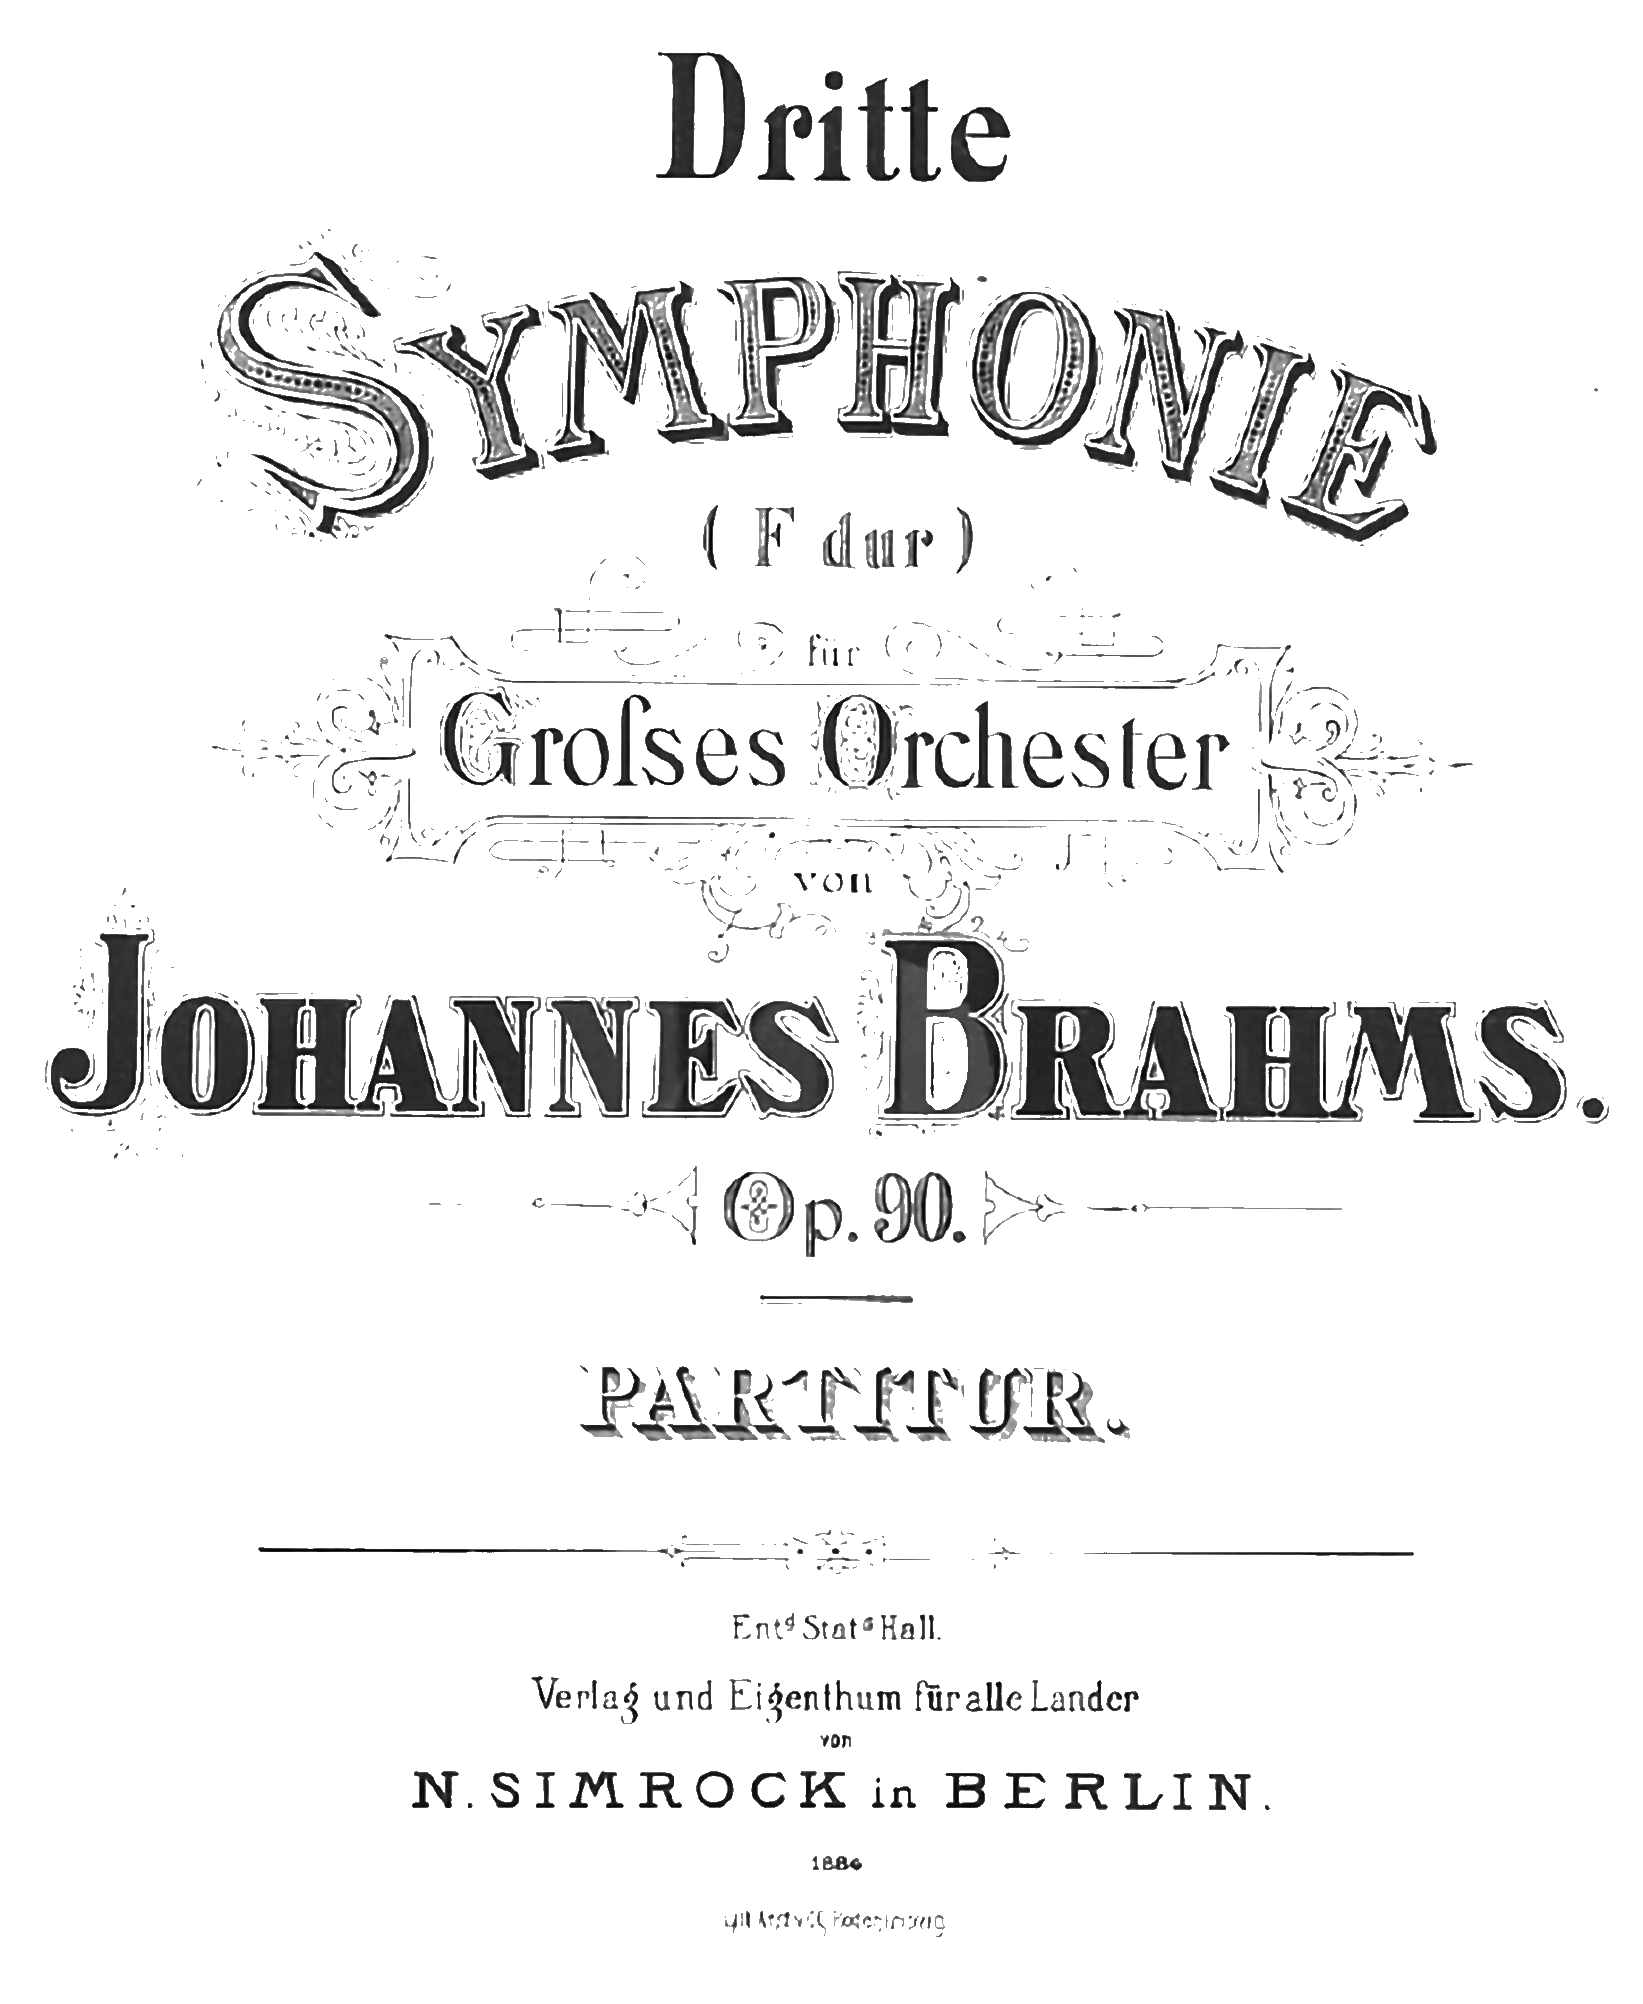 Voorblad partituur Brahms Vierde symfonie